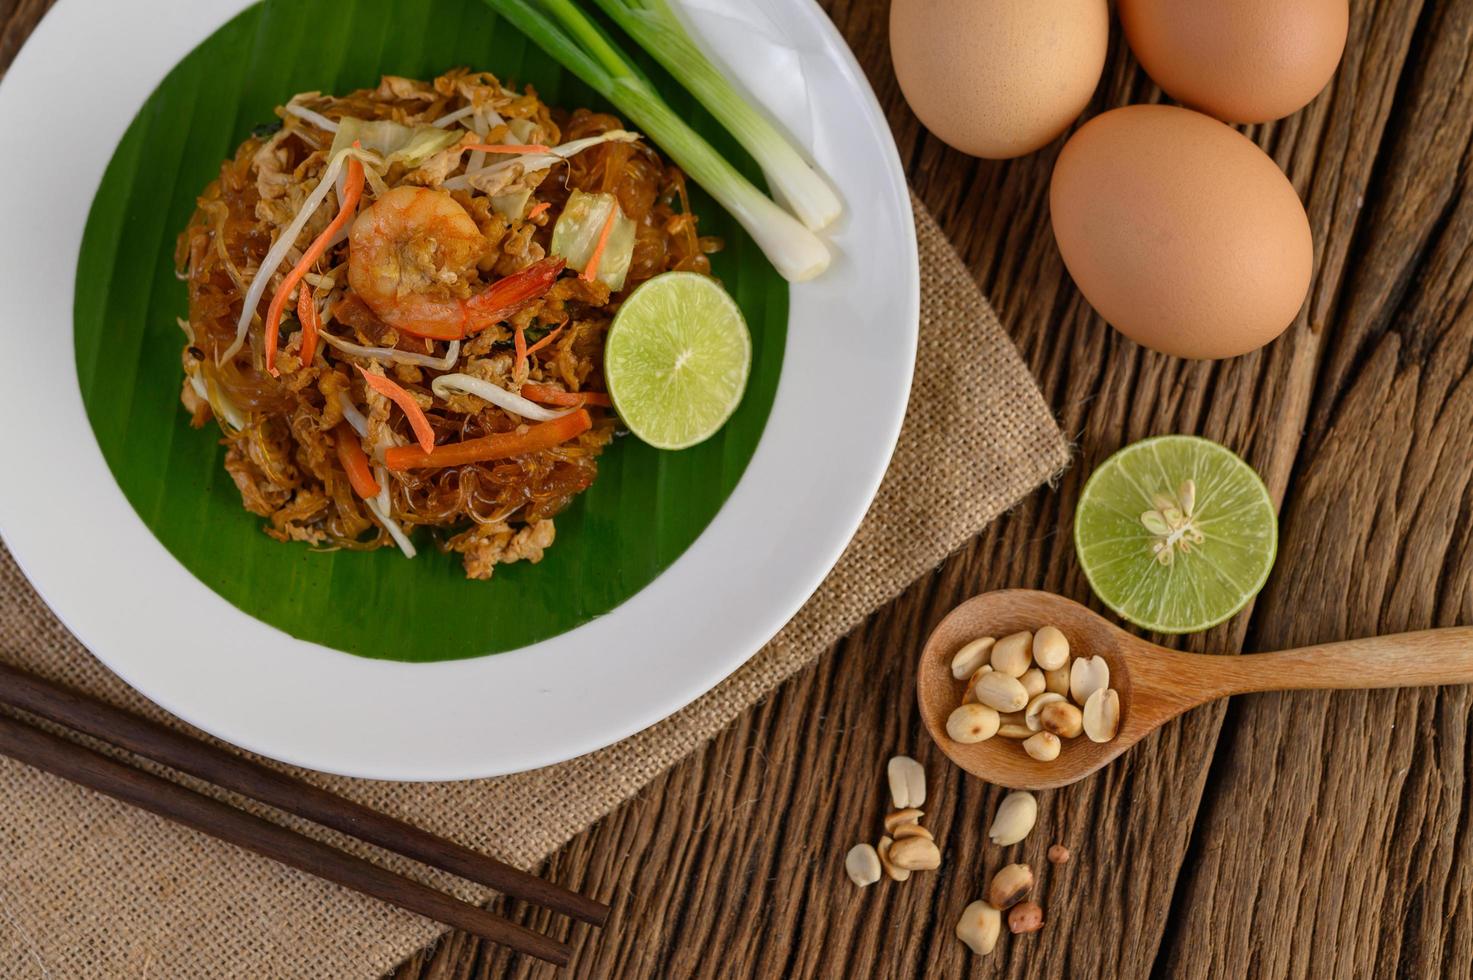 plato de pad thai camarones con limón y huevos foto